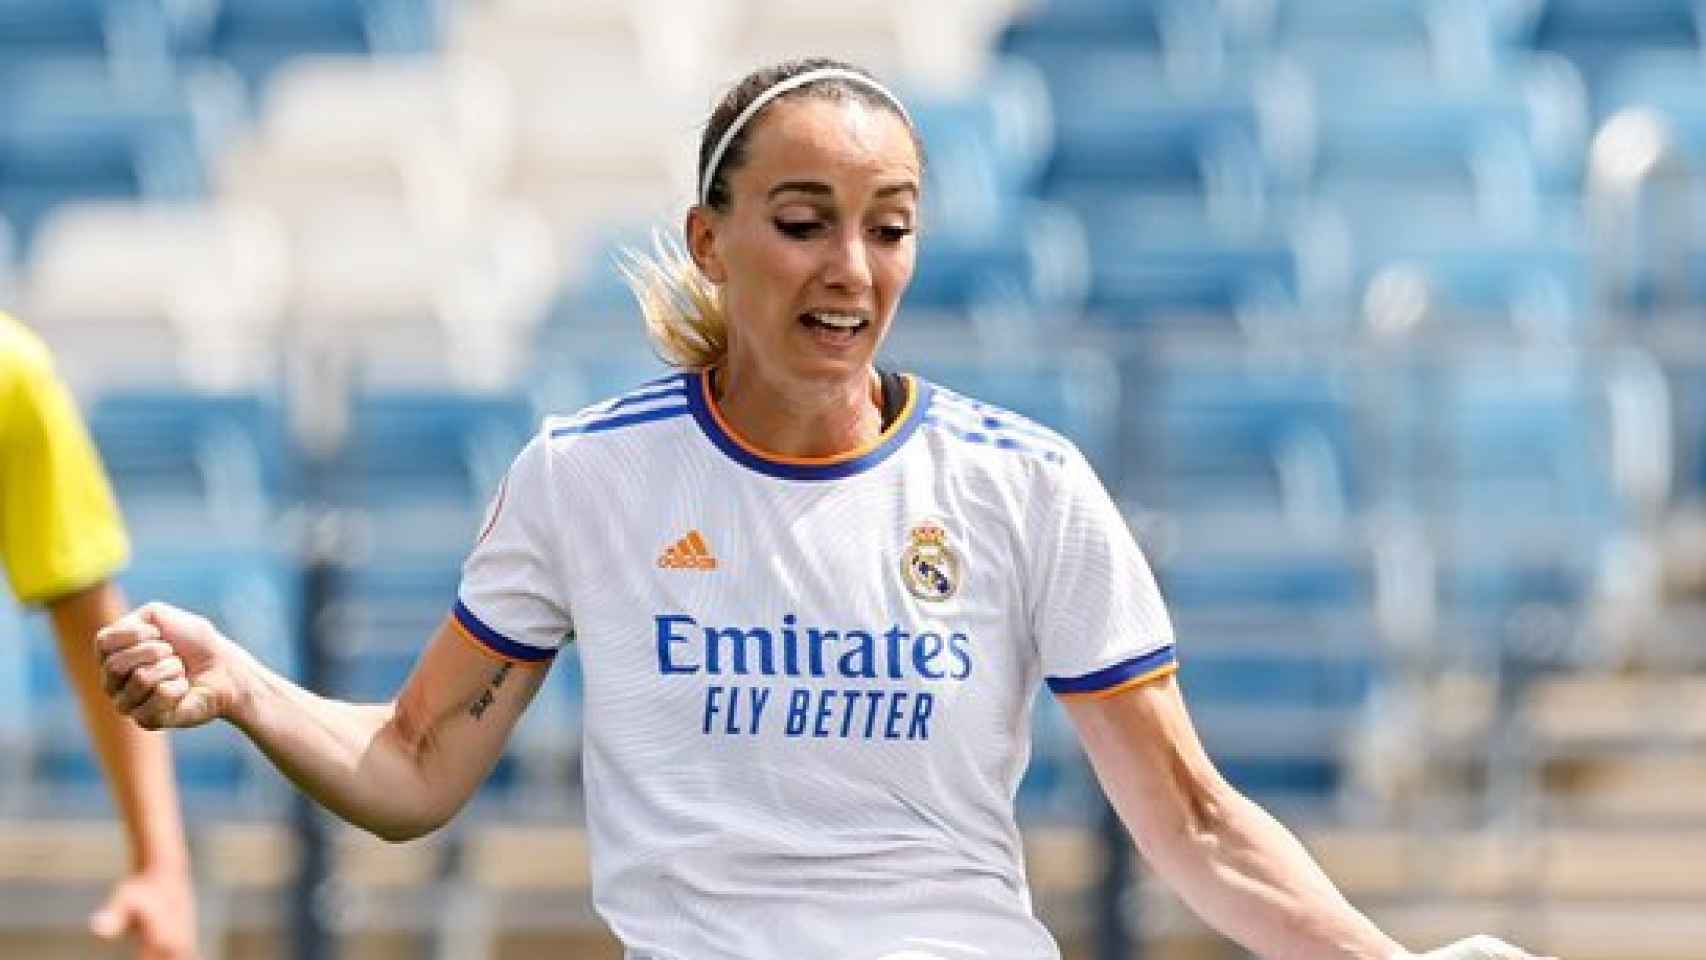 Kosovare Asllani, en el Real Madrid Femenino - Villarreal de la Primera Iberdrola 2021/2022